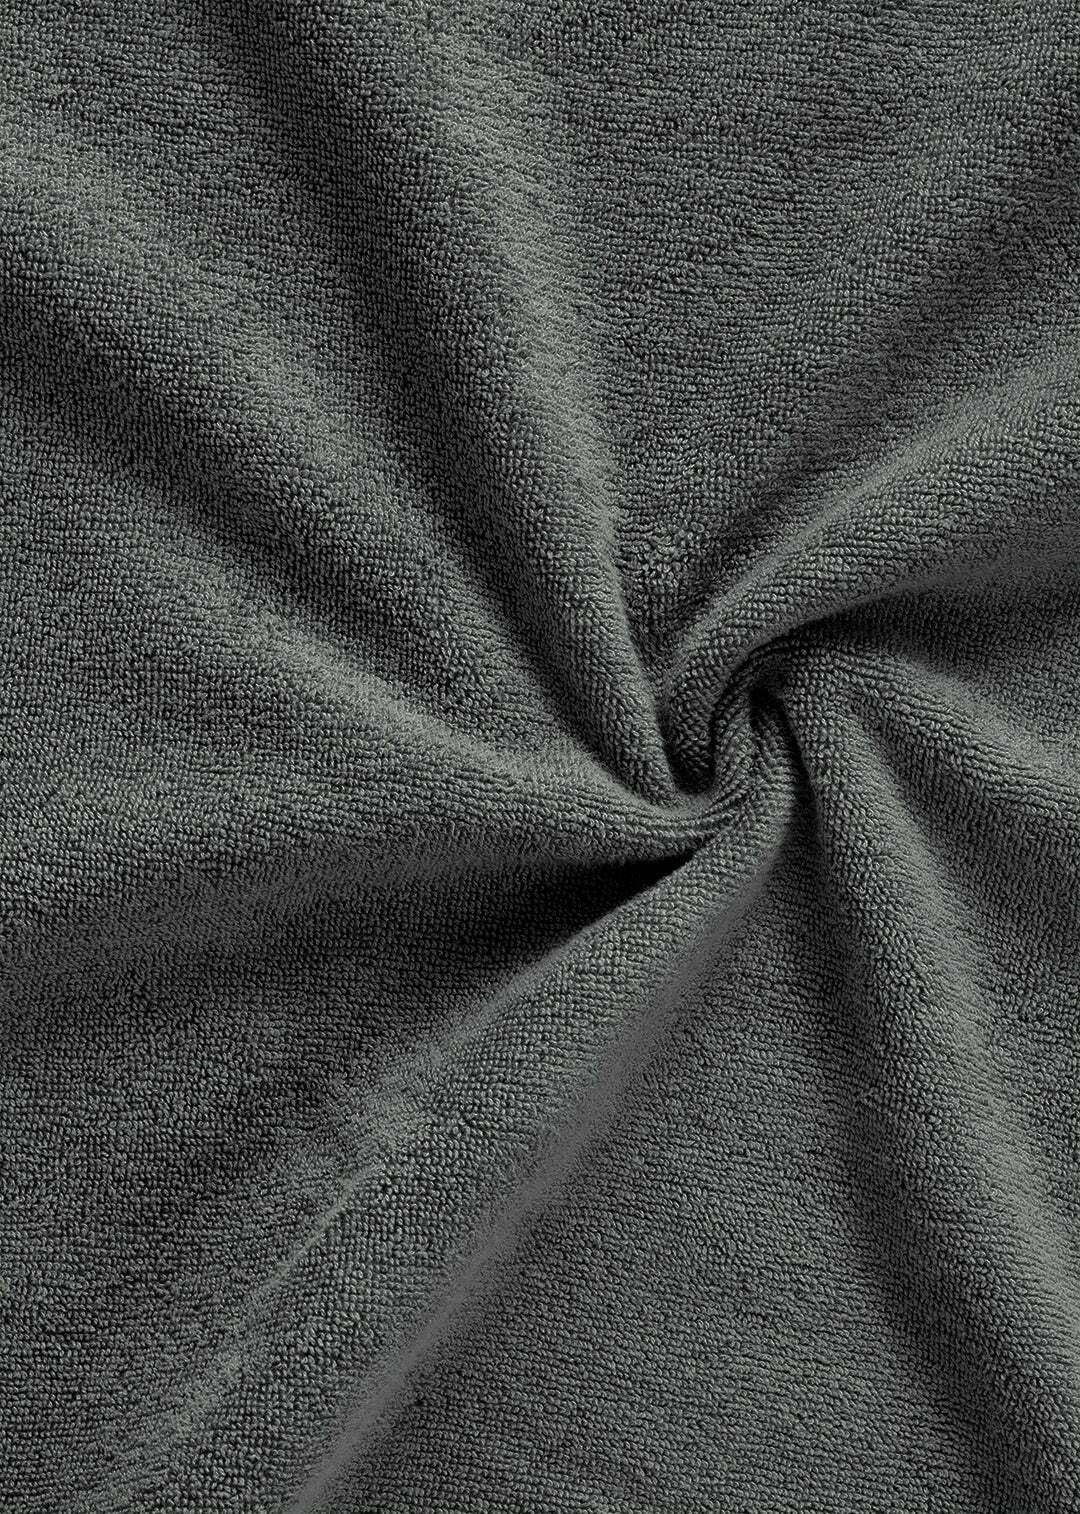 Handtuch Baumwolle Anthrazit 30 x 30 cm 1